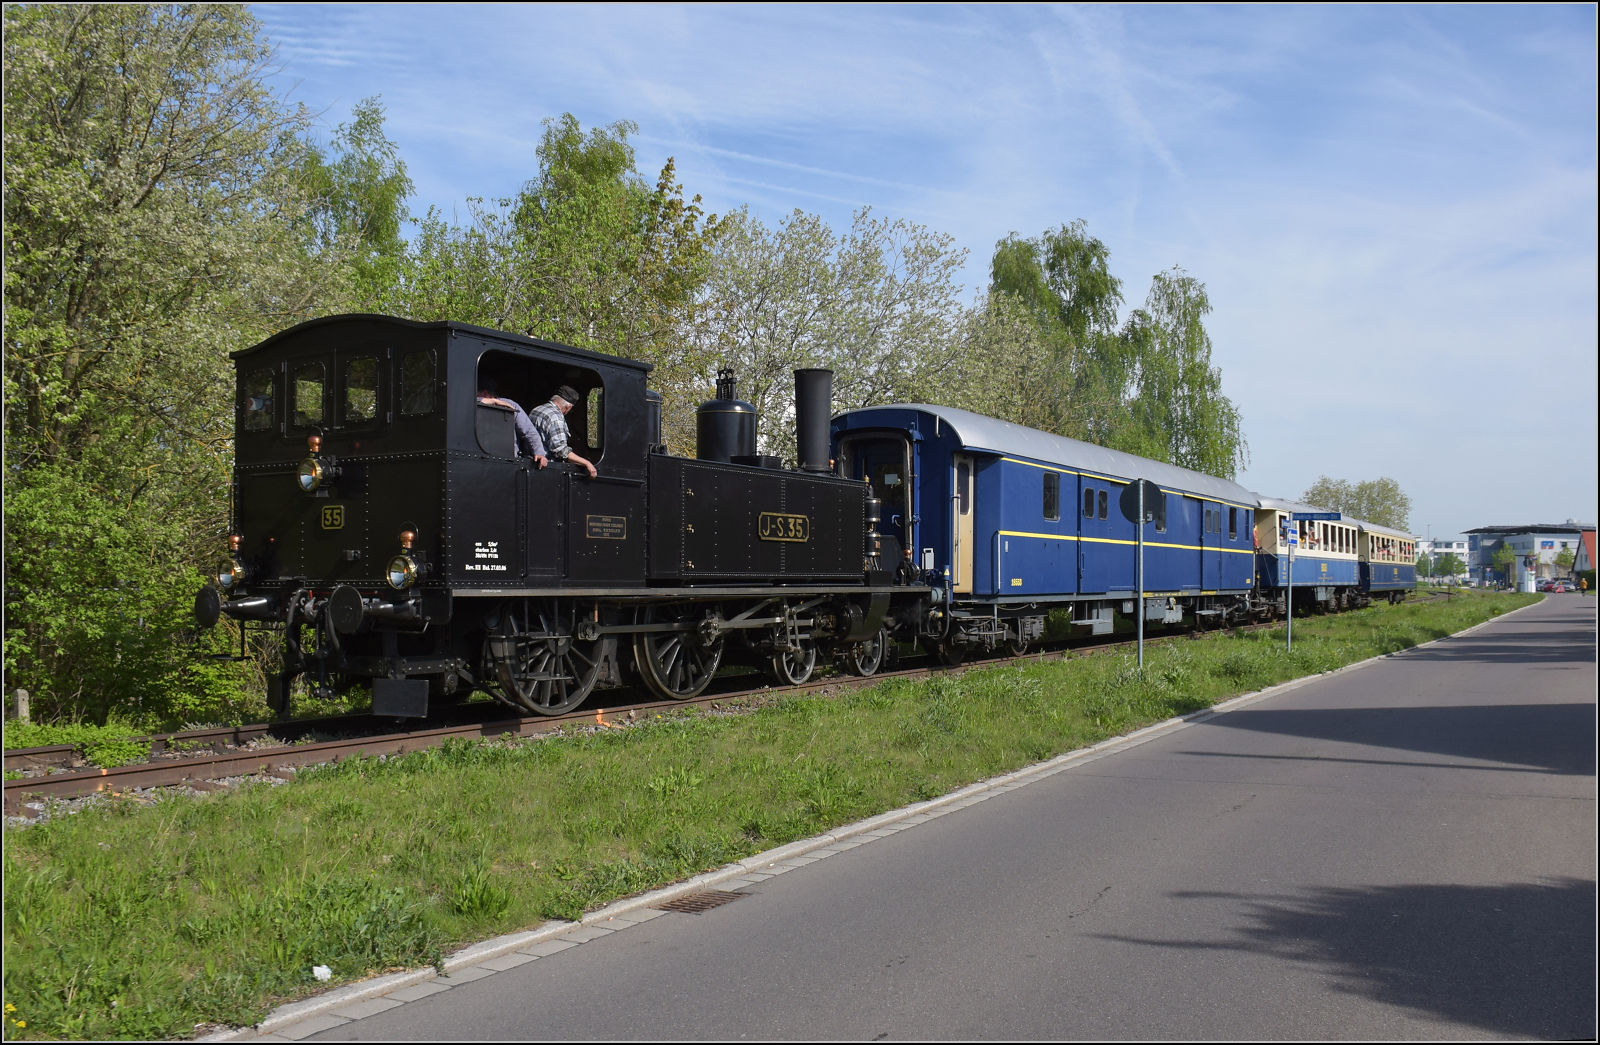 Saisonstart auf dem Schweizerbähnle.

Die Jura-Simplon Eb 2/4 35 zwischen den Bahnübergängen in Singen in der Schrotzburgstrasse. April 2024.